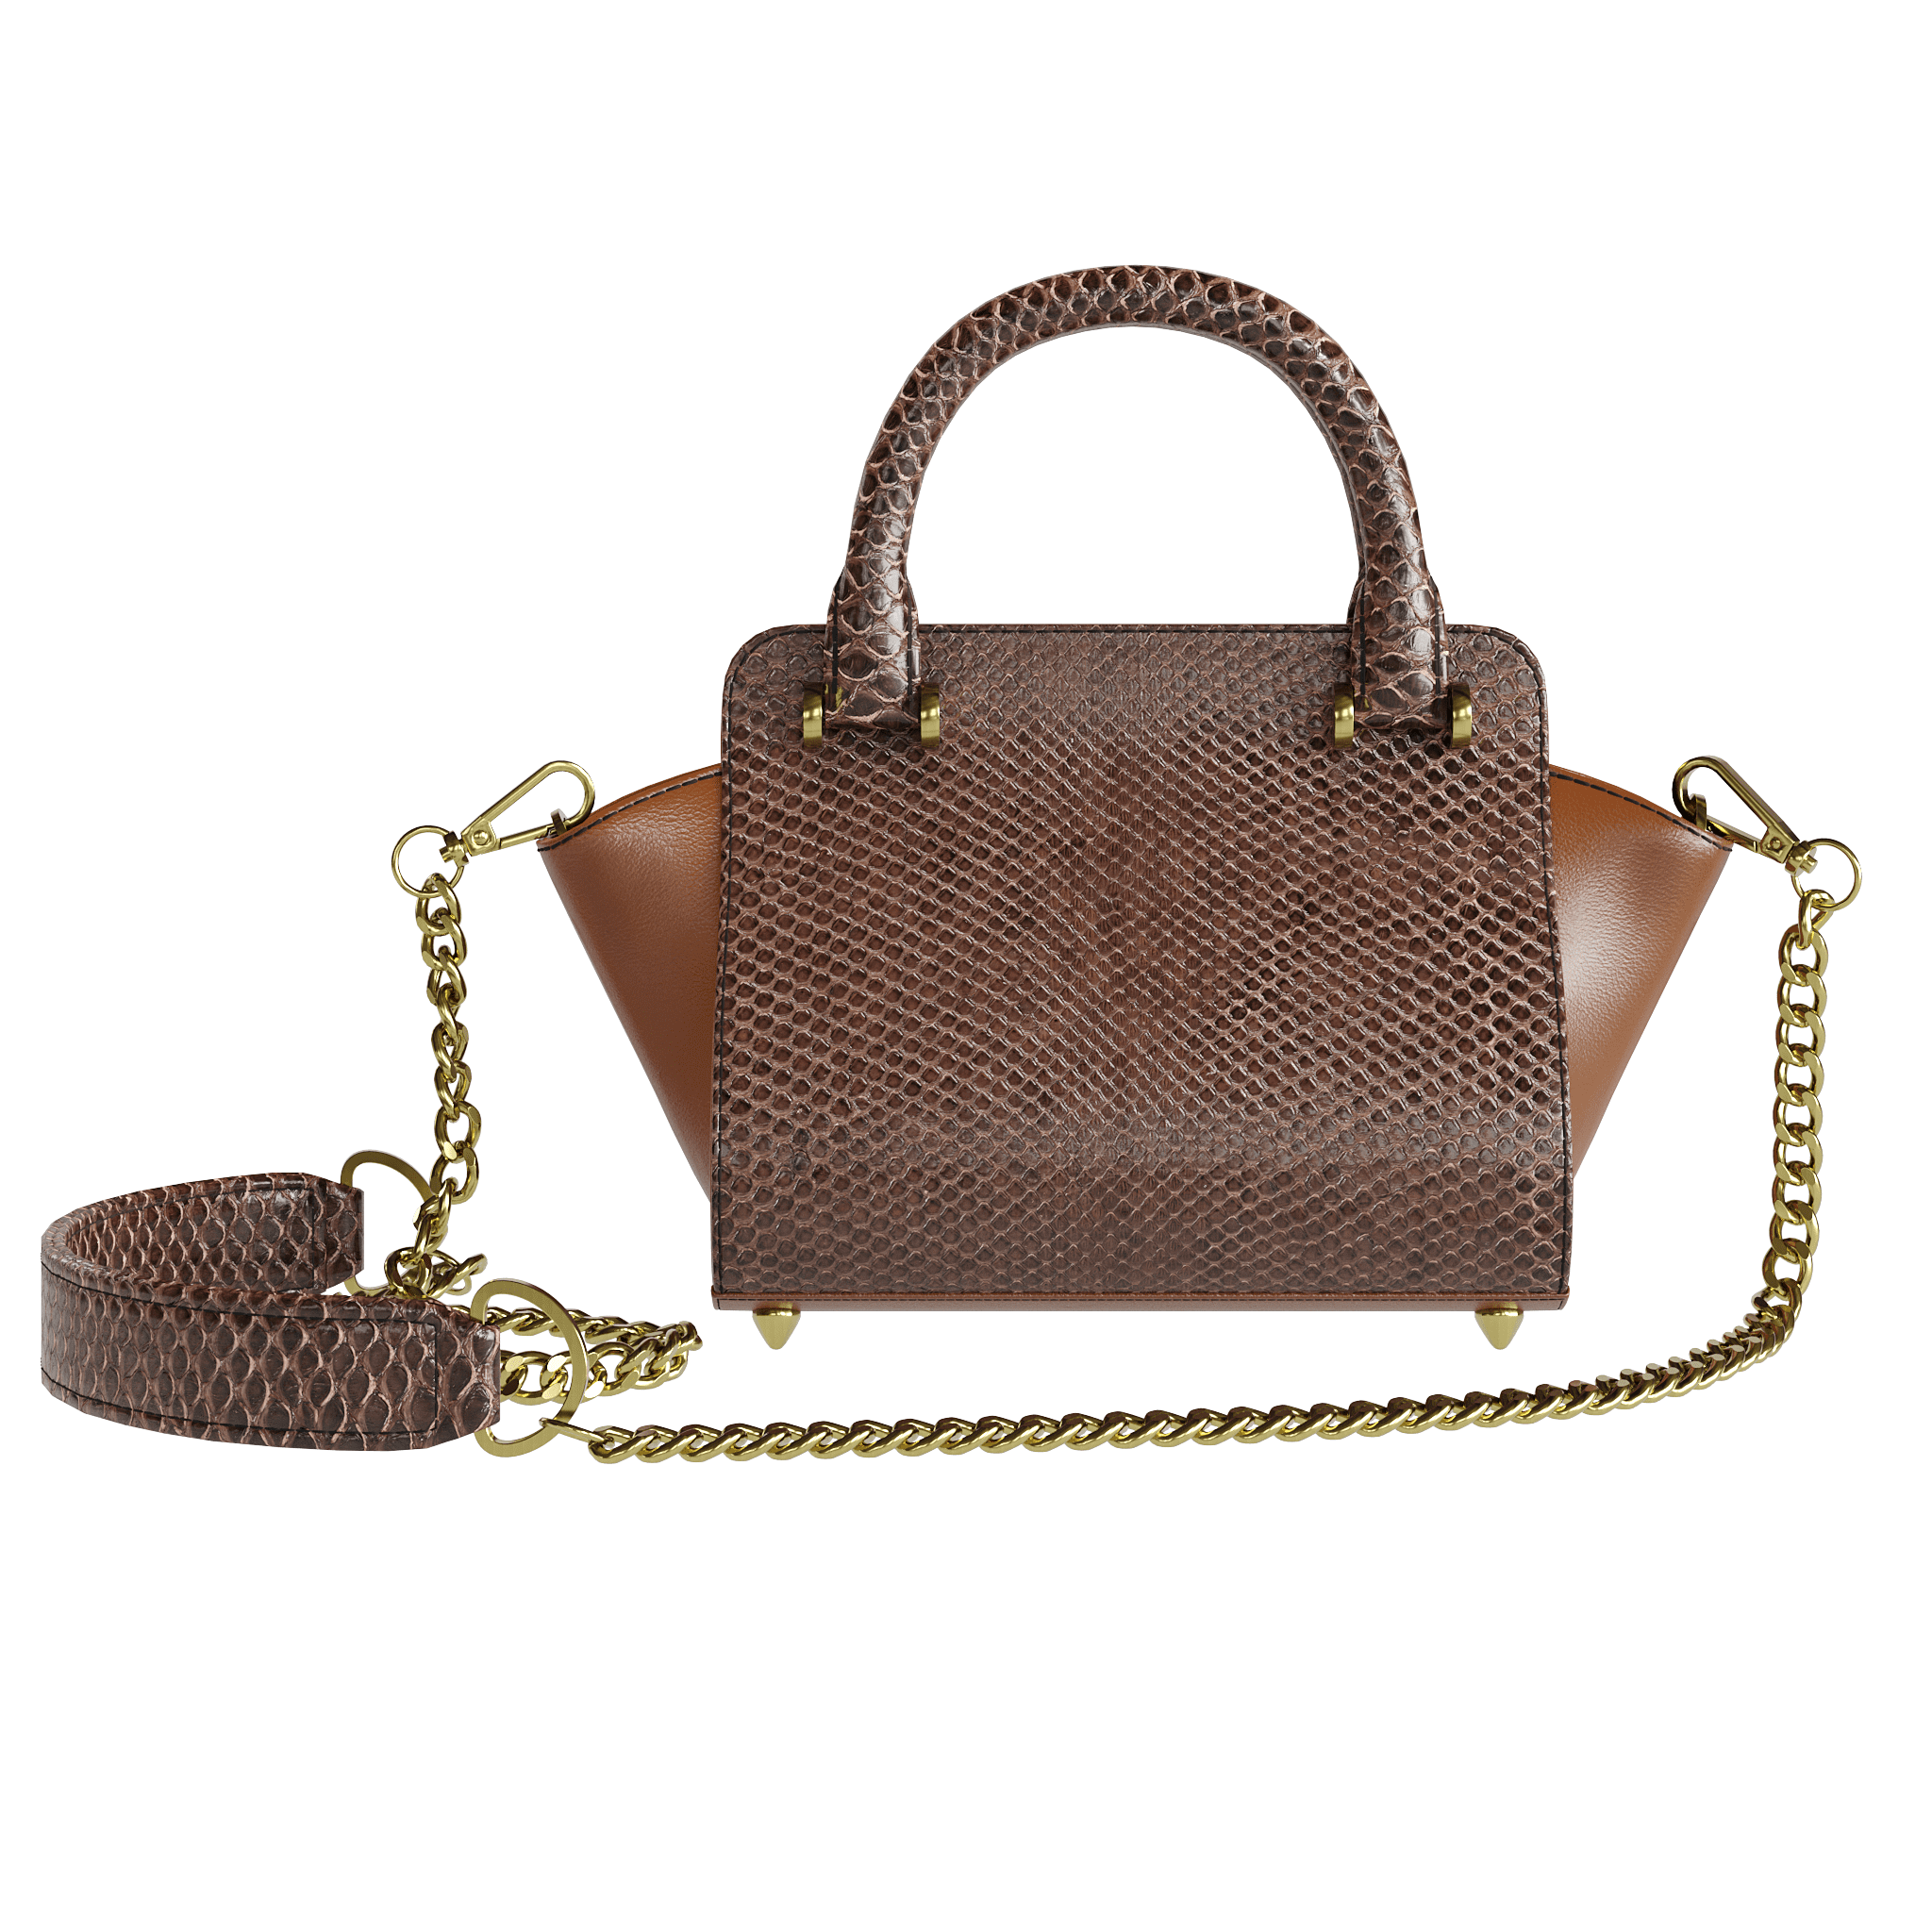 Fine Brown Python Handbag With Dark Tanned Accents